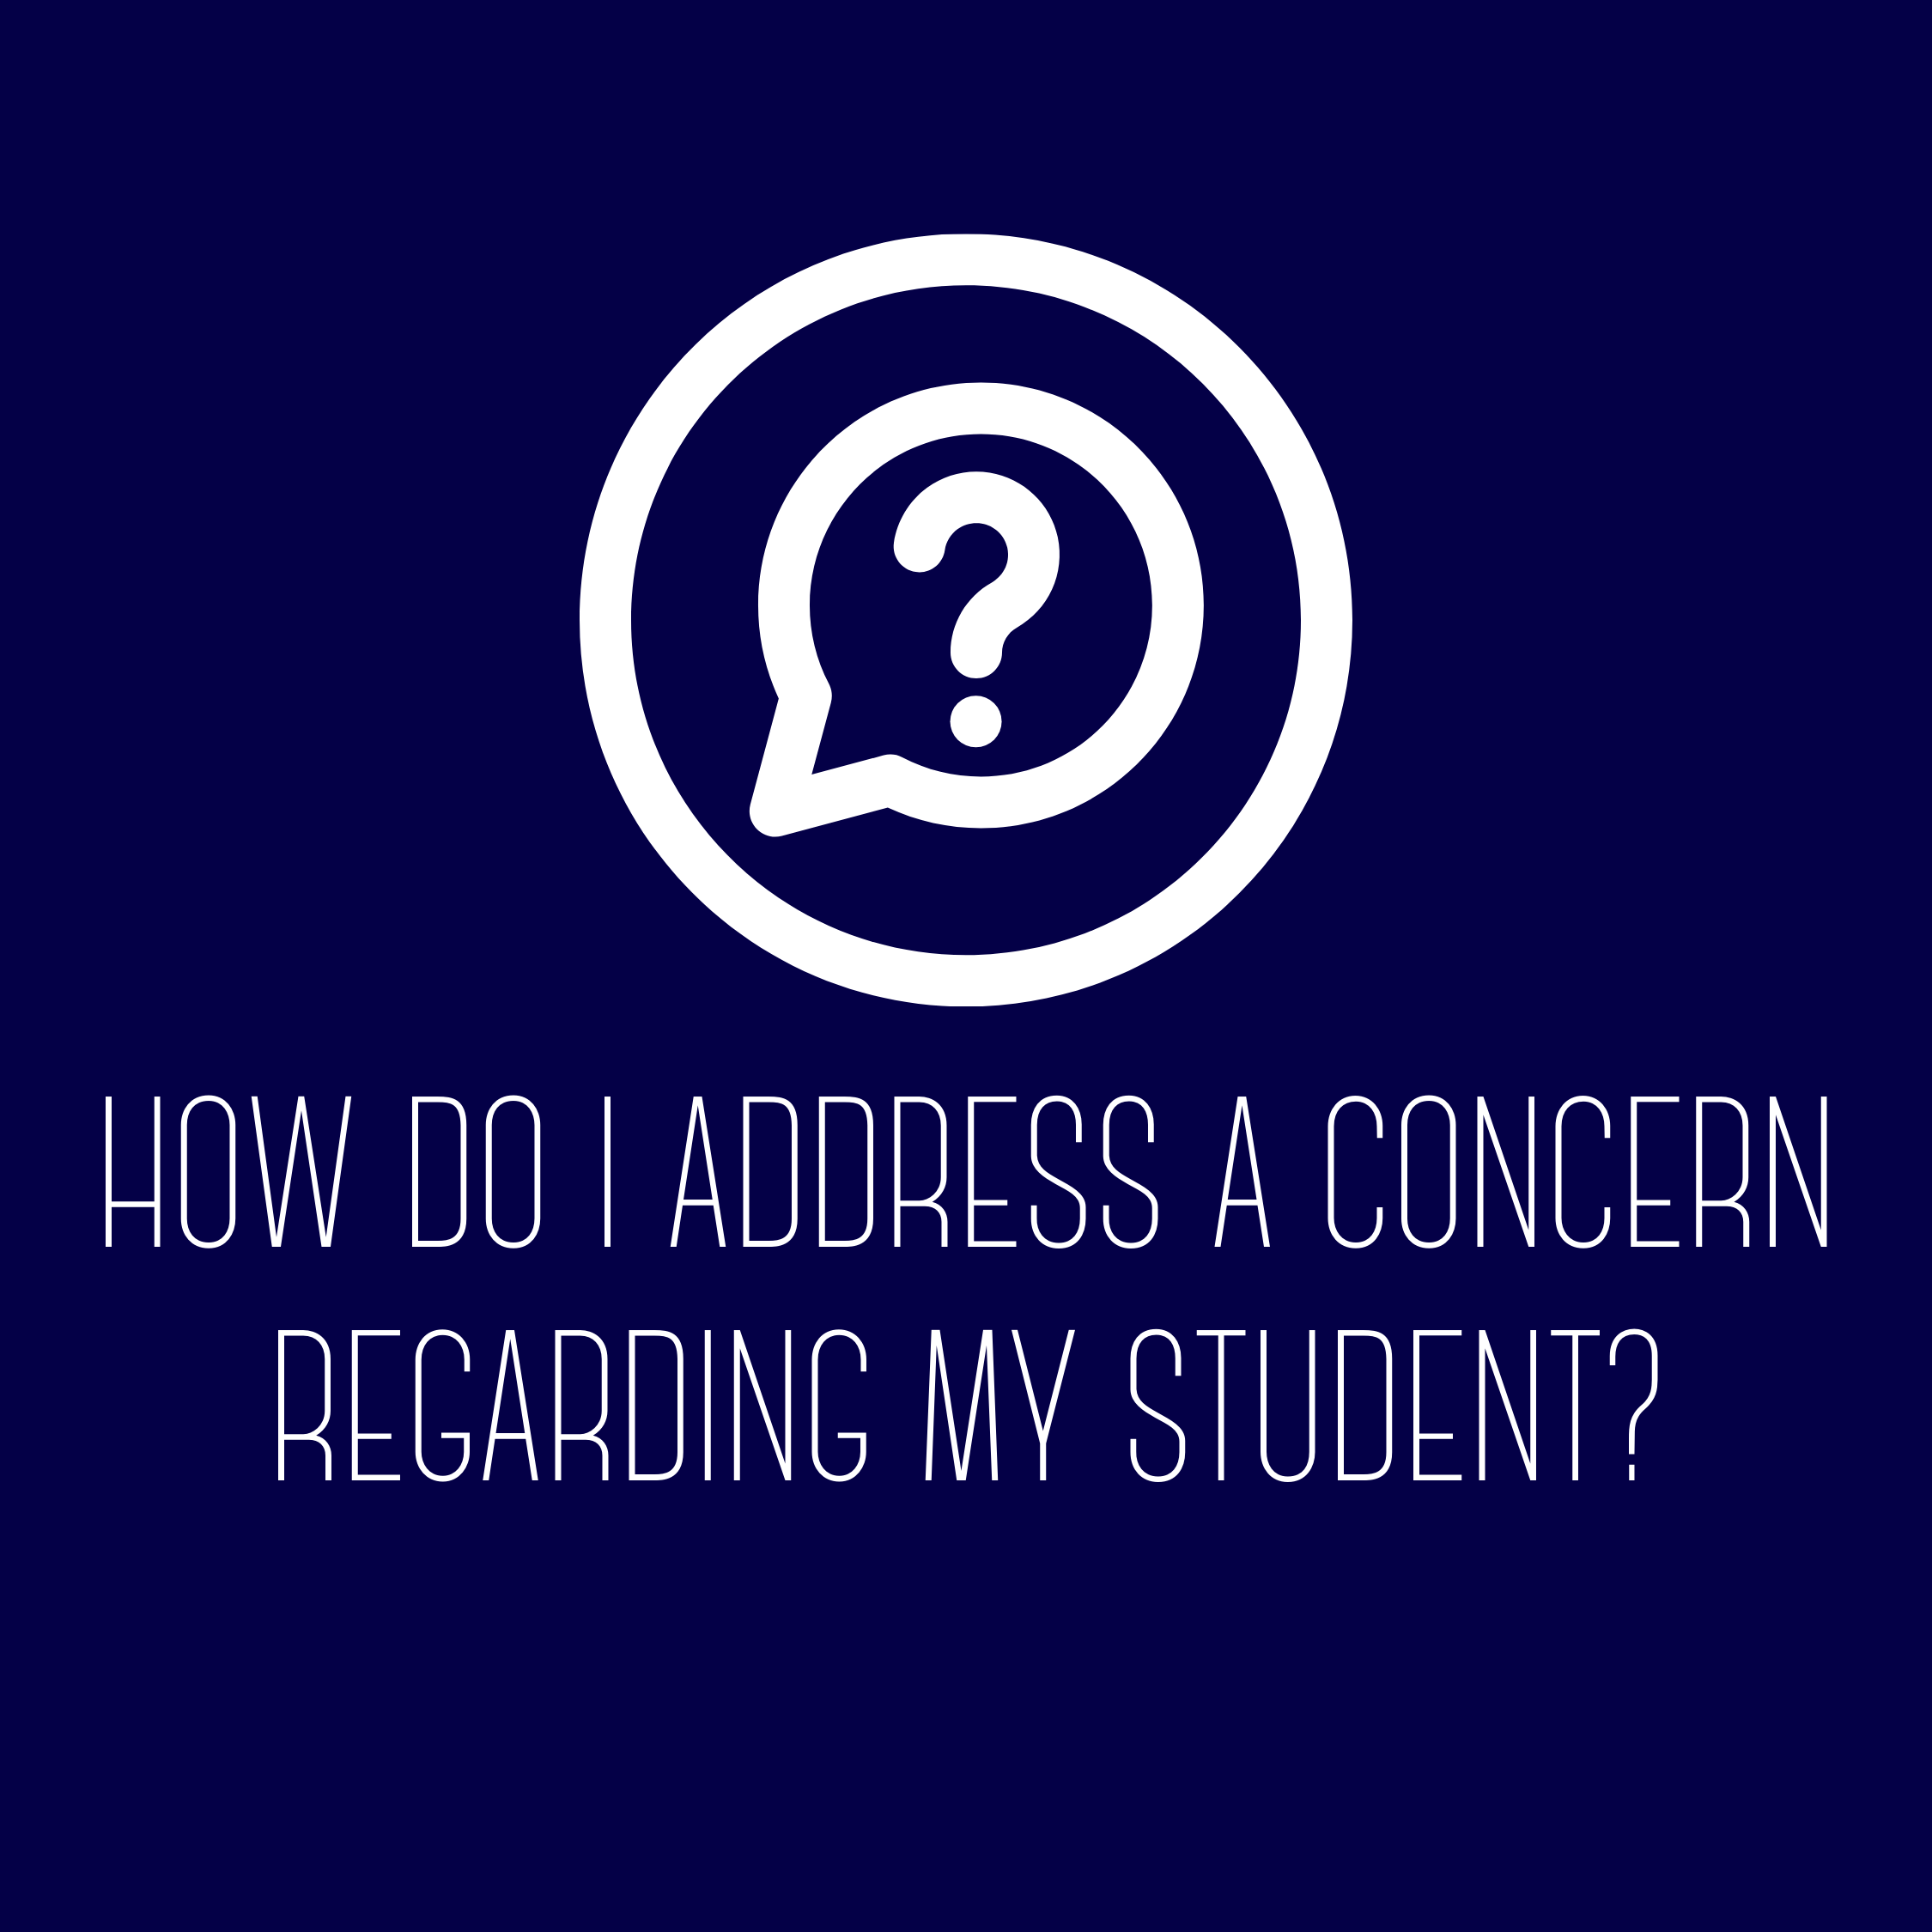 How do I address a concern regarding my student?